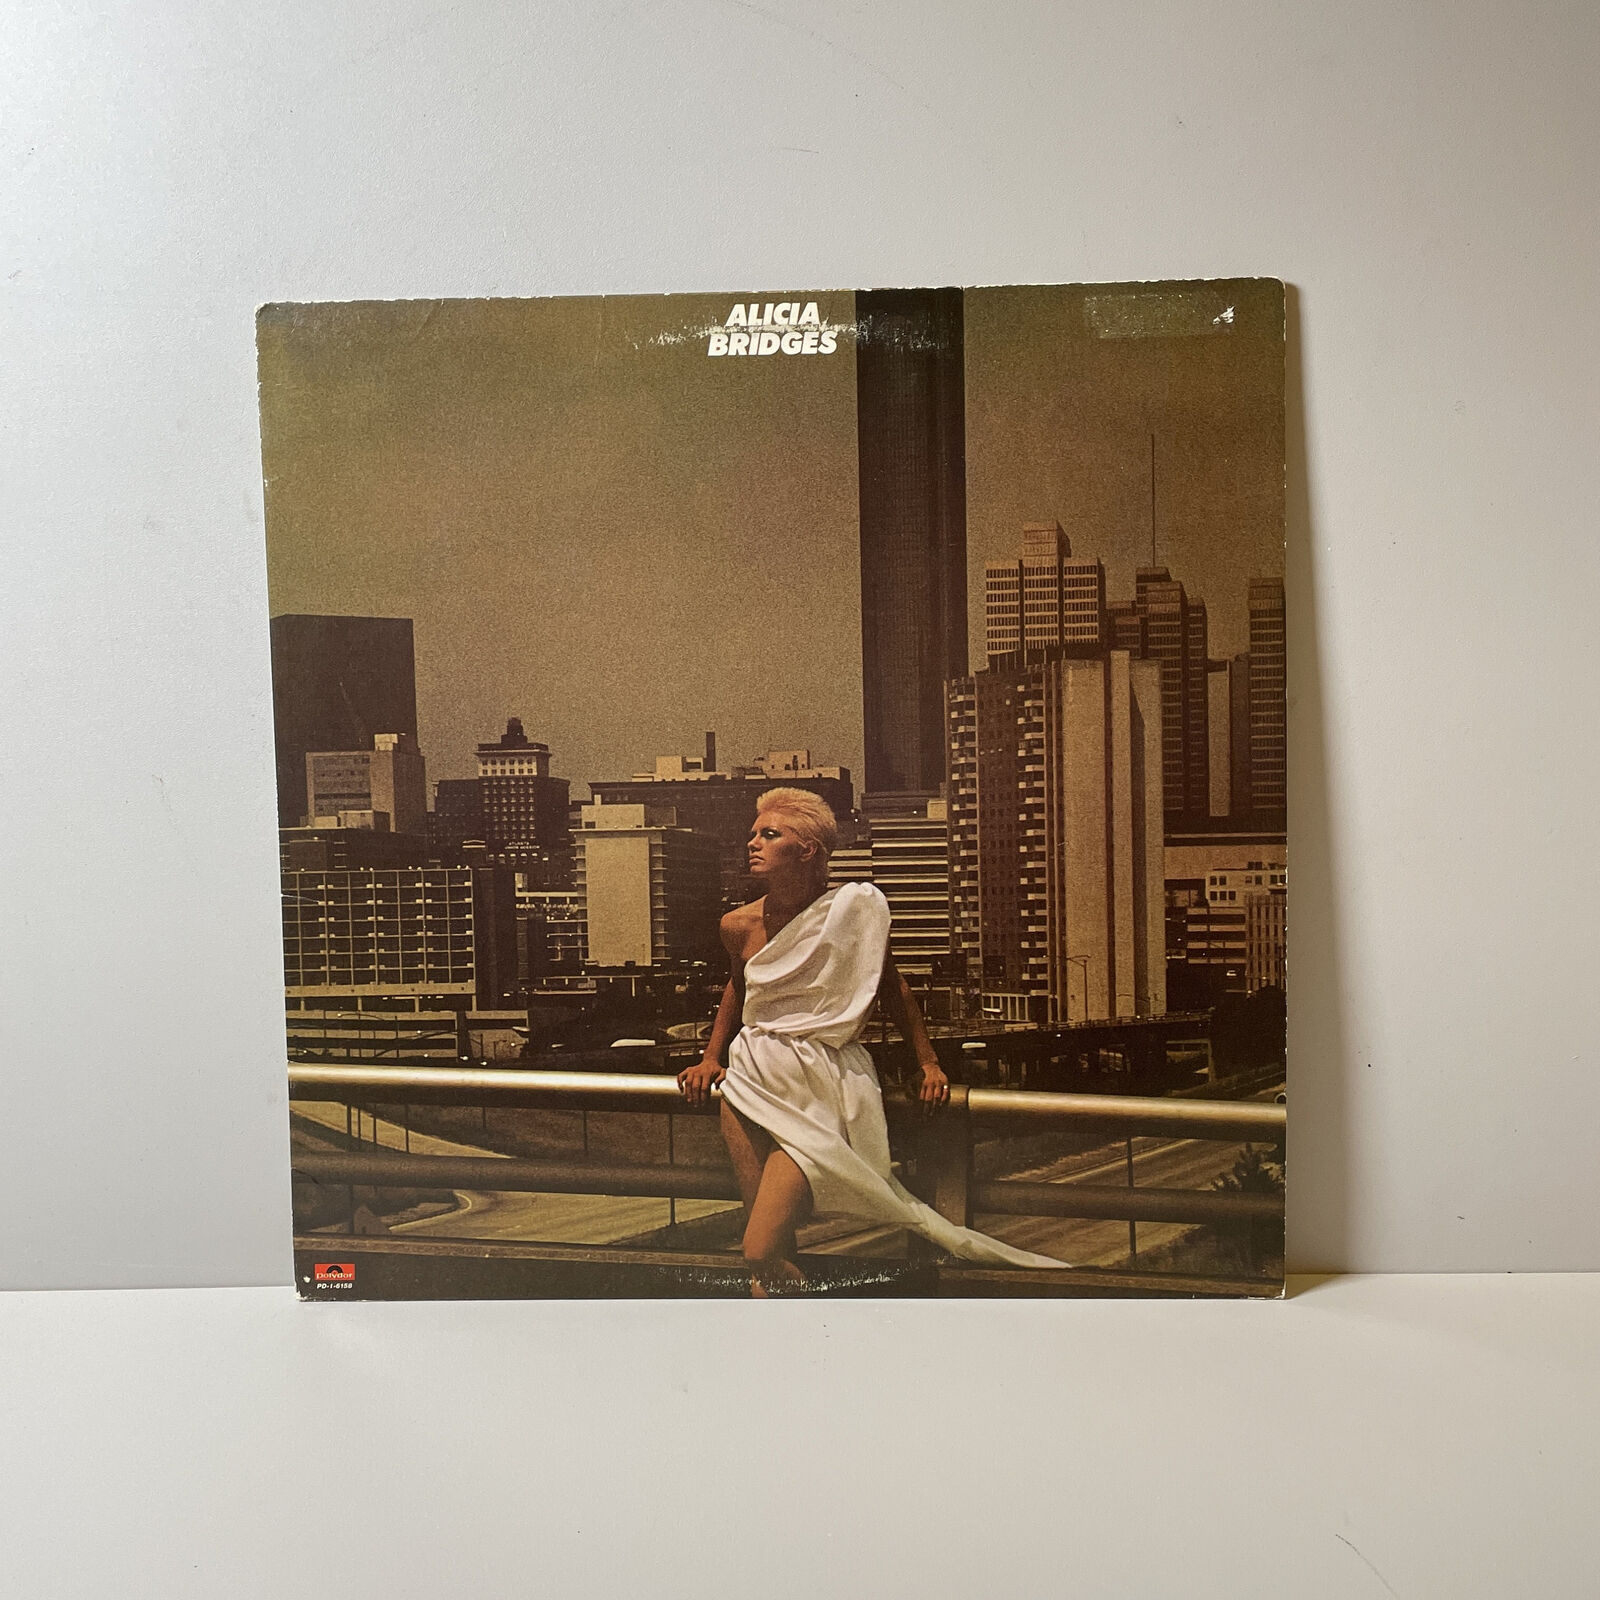 Alicia Bridges - Alicia Bridges - Vinyl LP Record - 1978